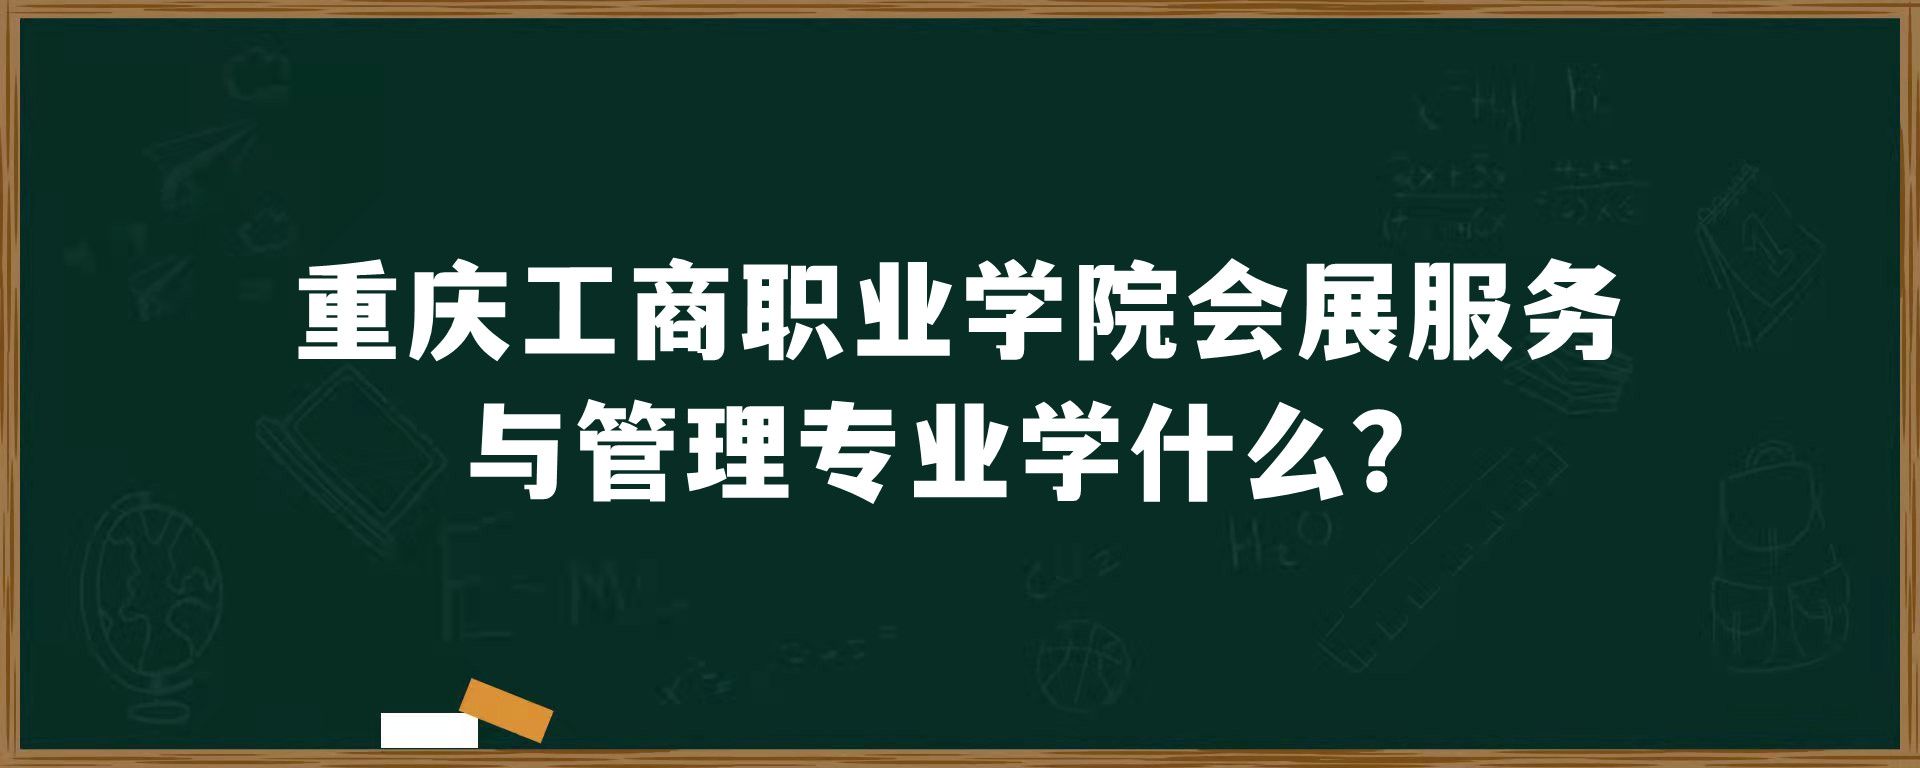 重庆工商职业学院会展服务与管理专业学什么？